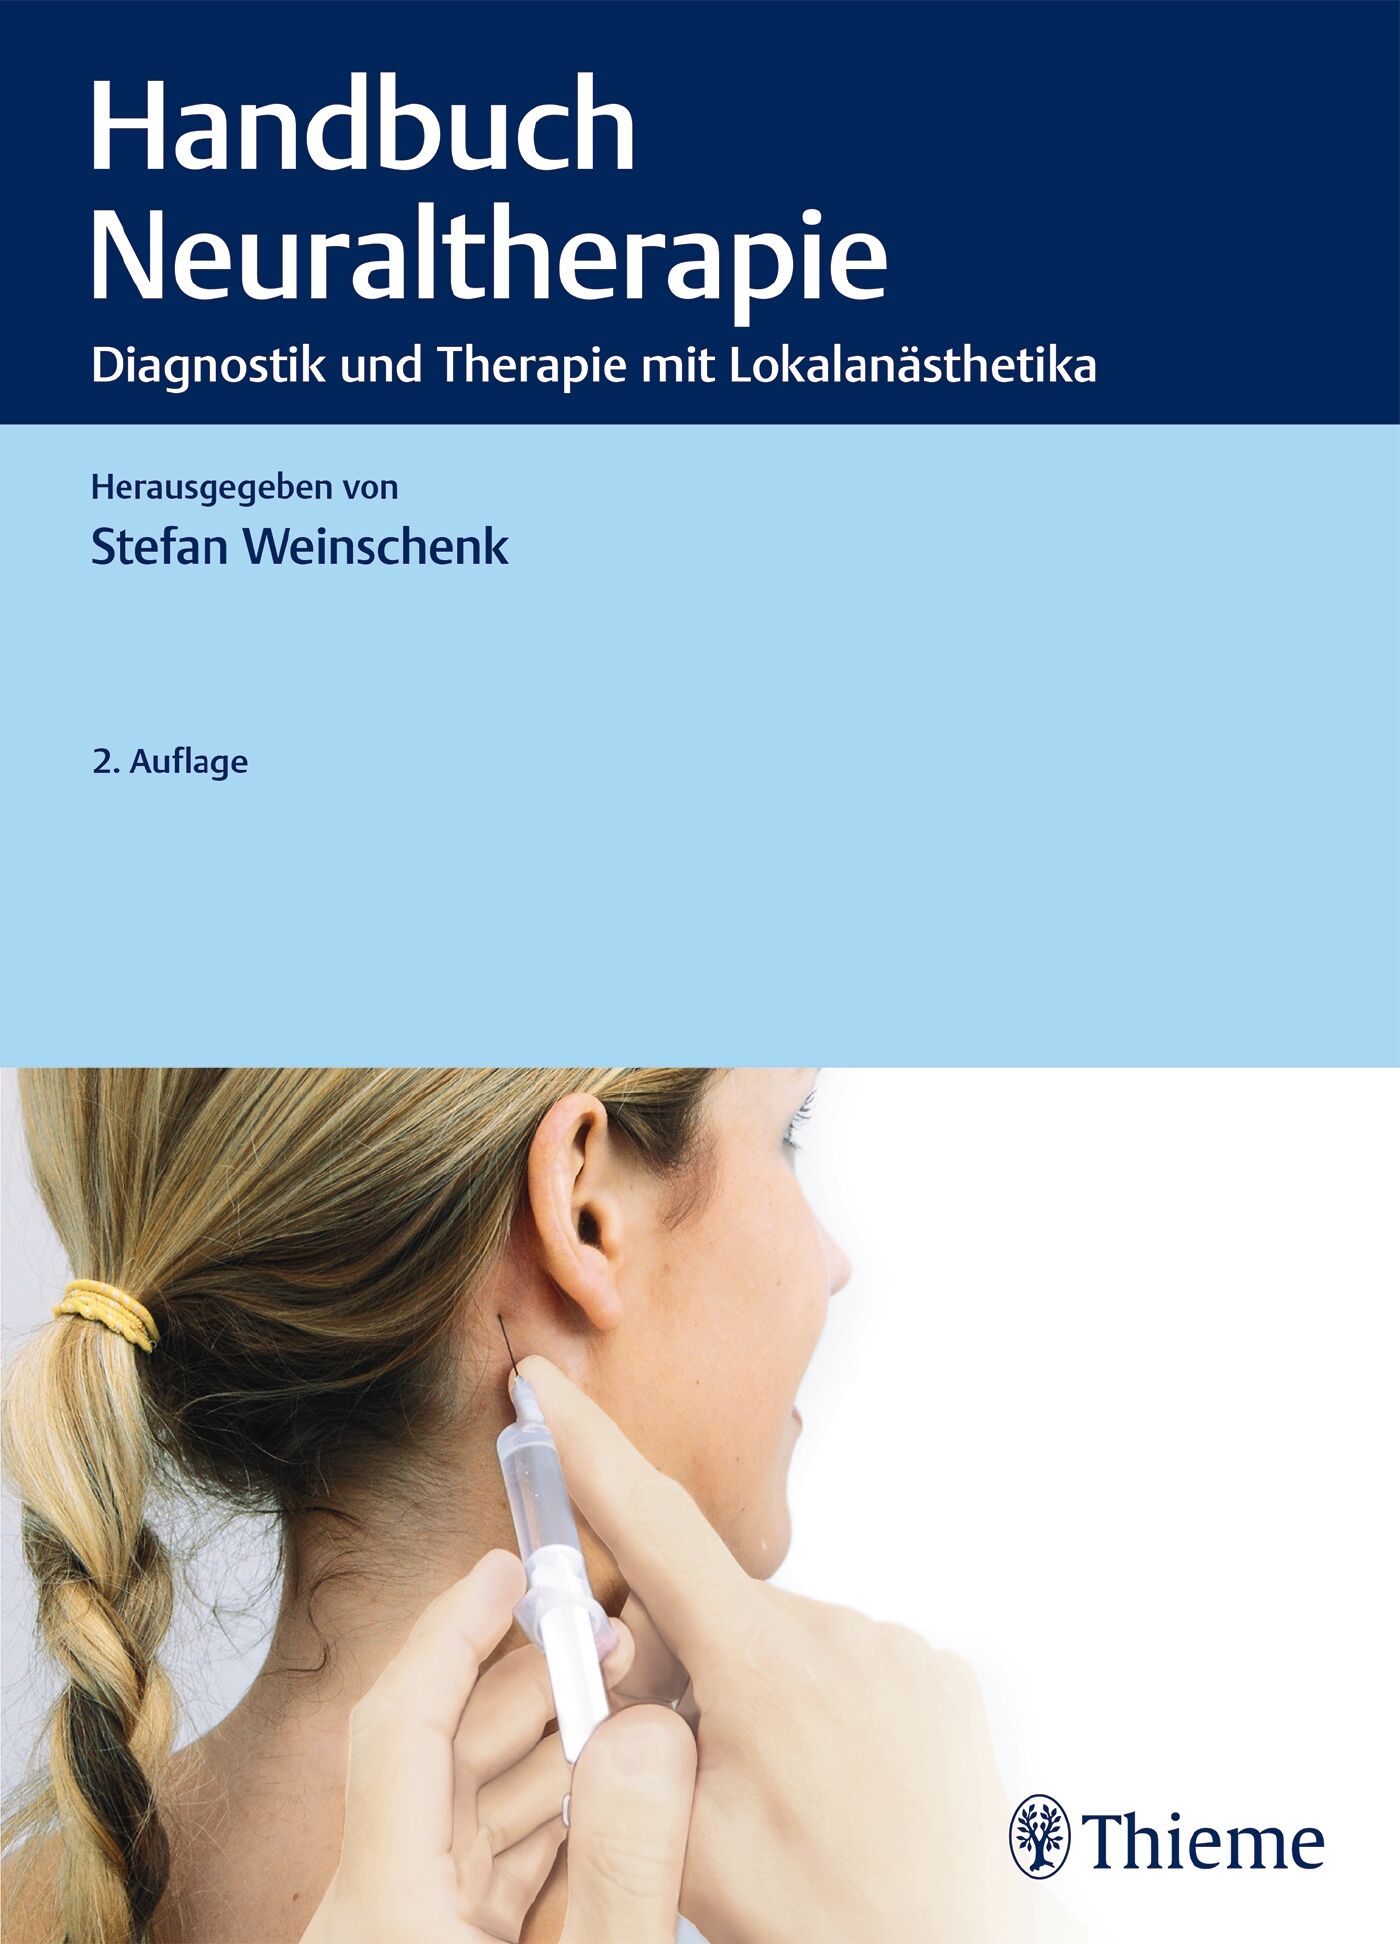 Handbuch Neuraltherapie, 9783132205116